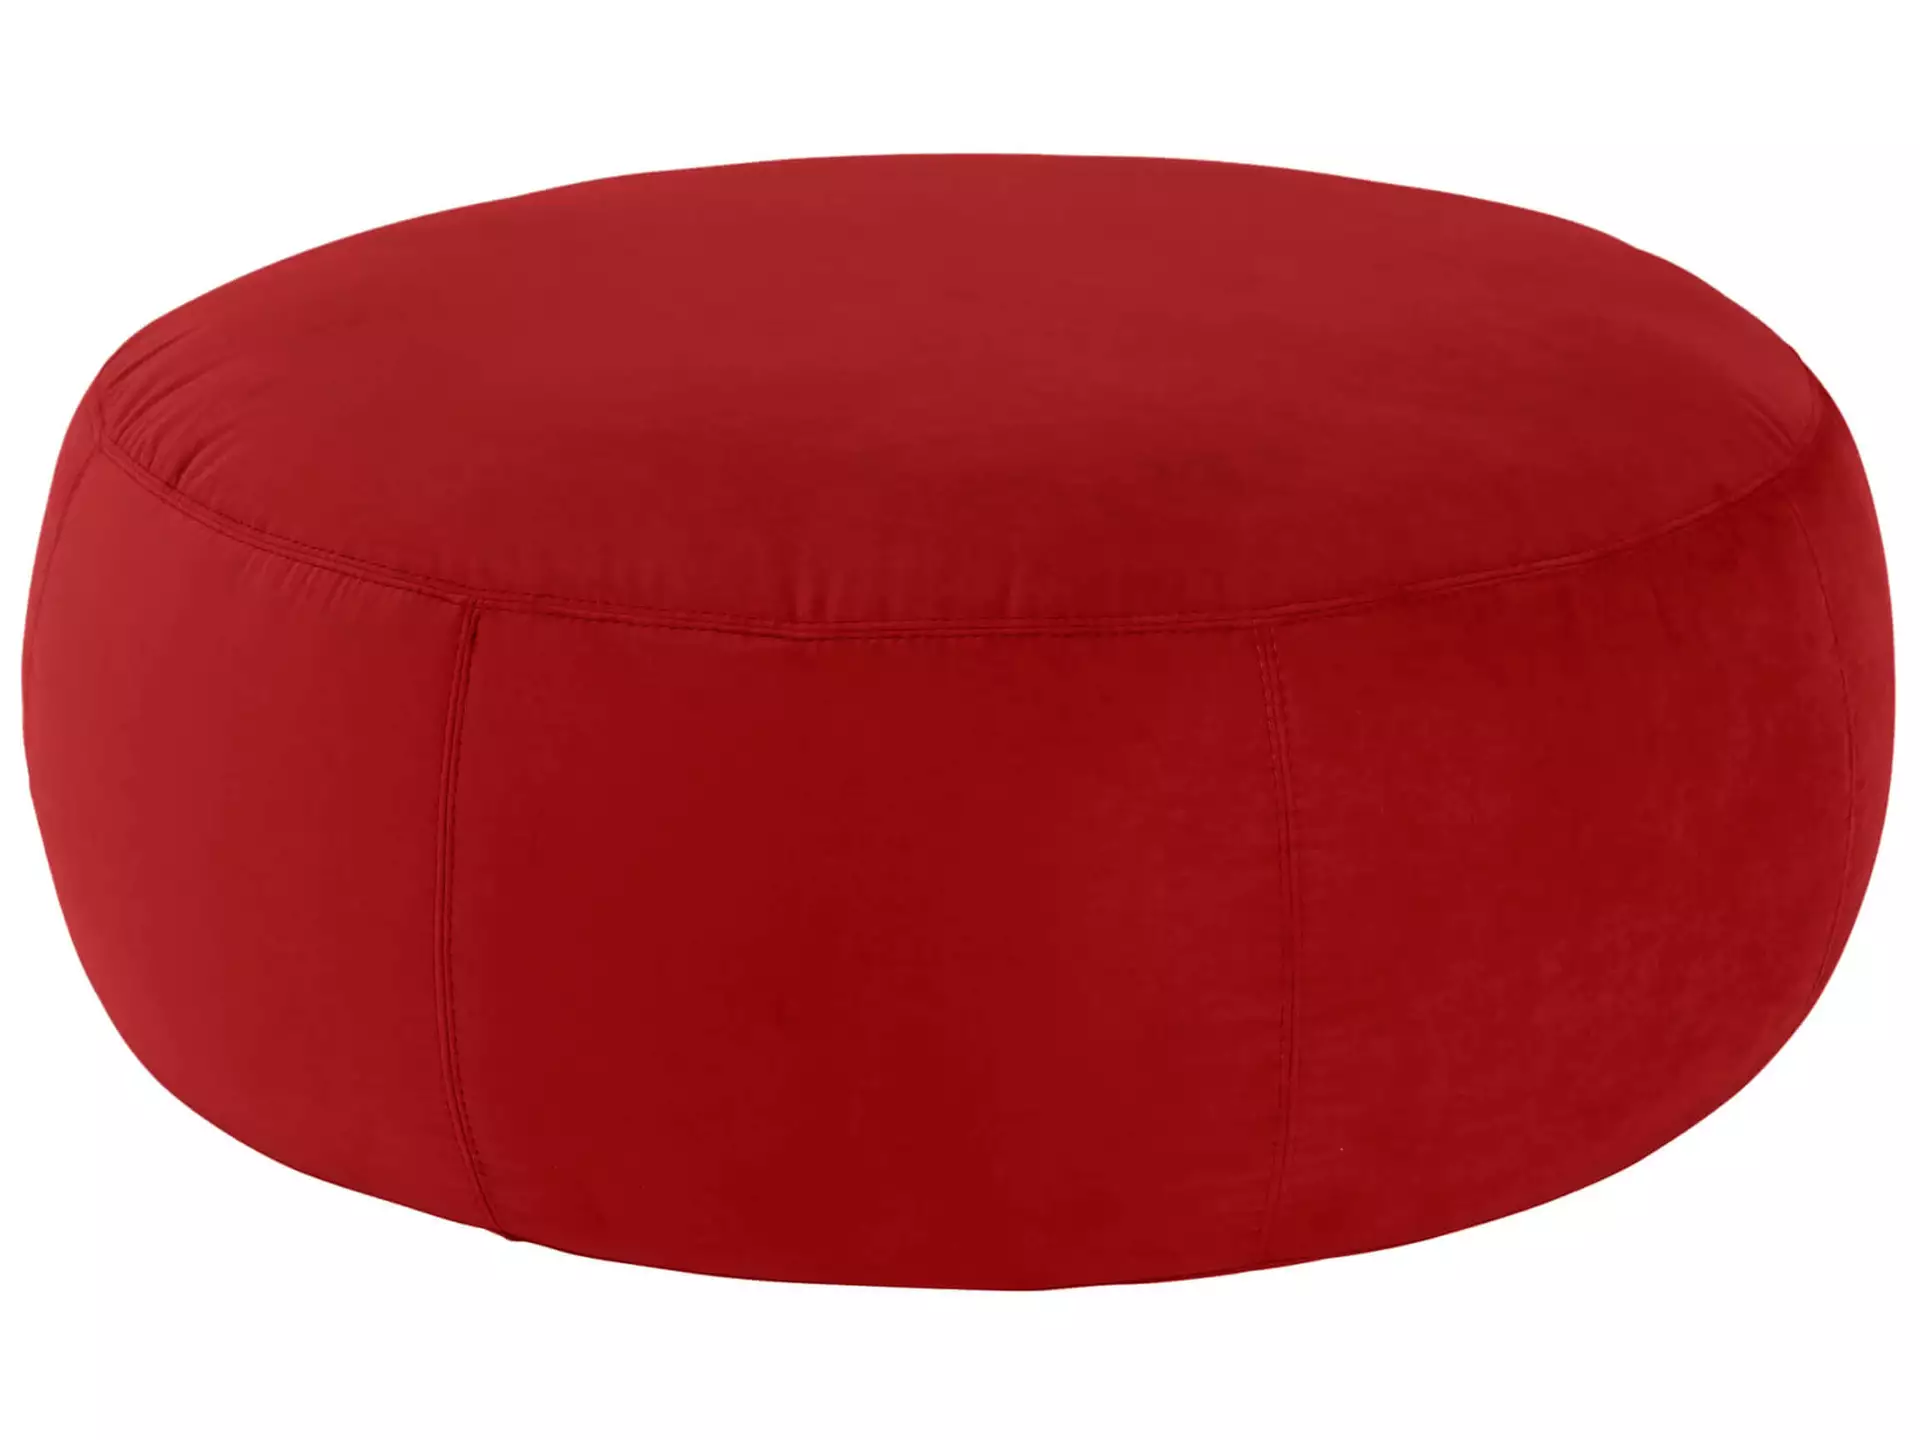 Hocker Annabelle Velvet D: 105 cm Candy / Farbe: Red / Material: Stoff